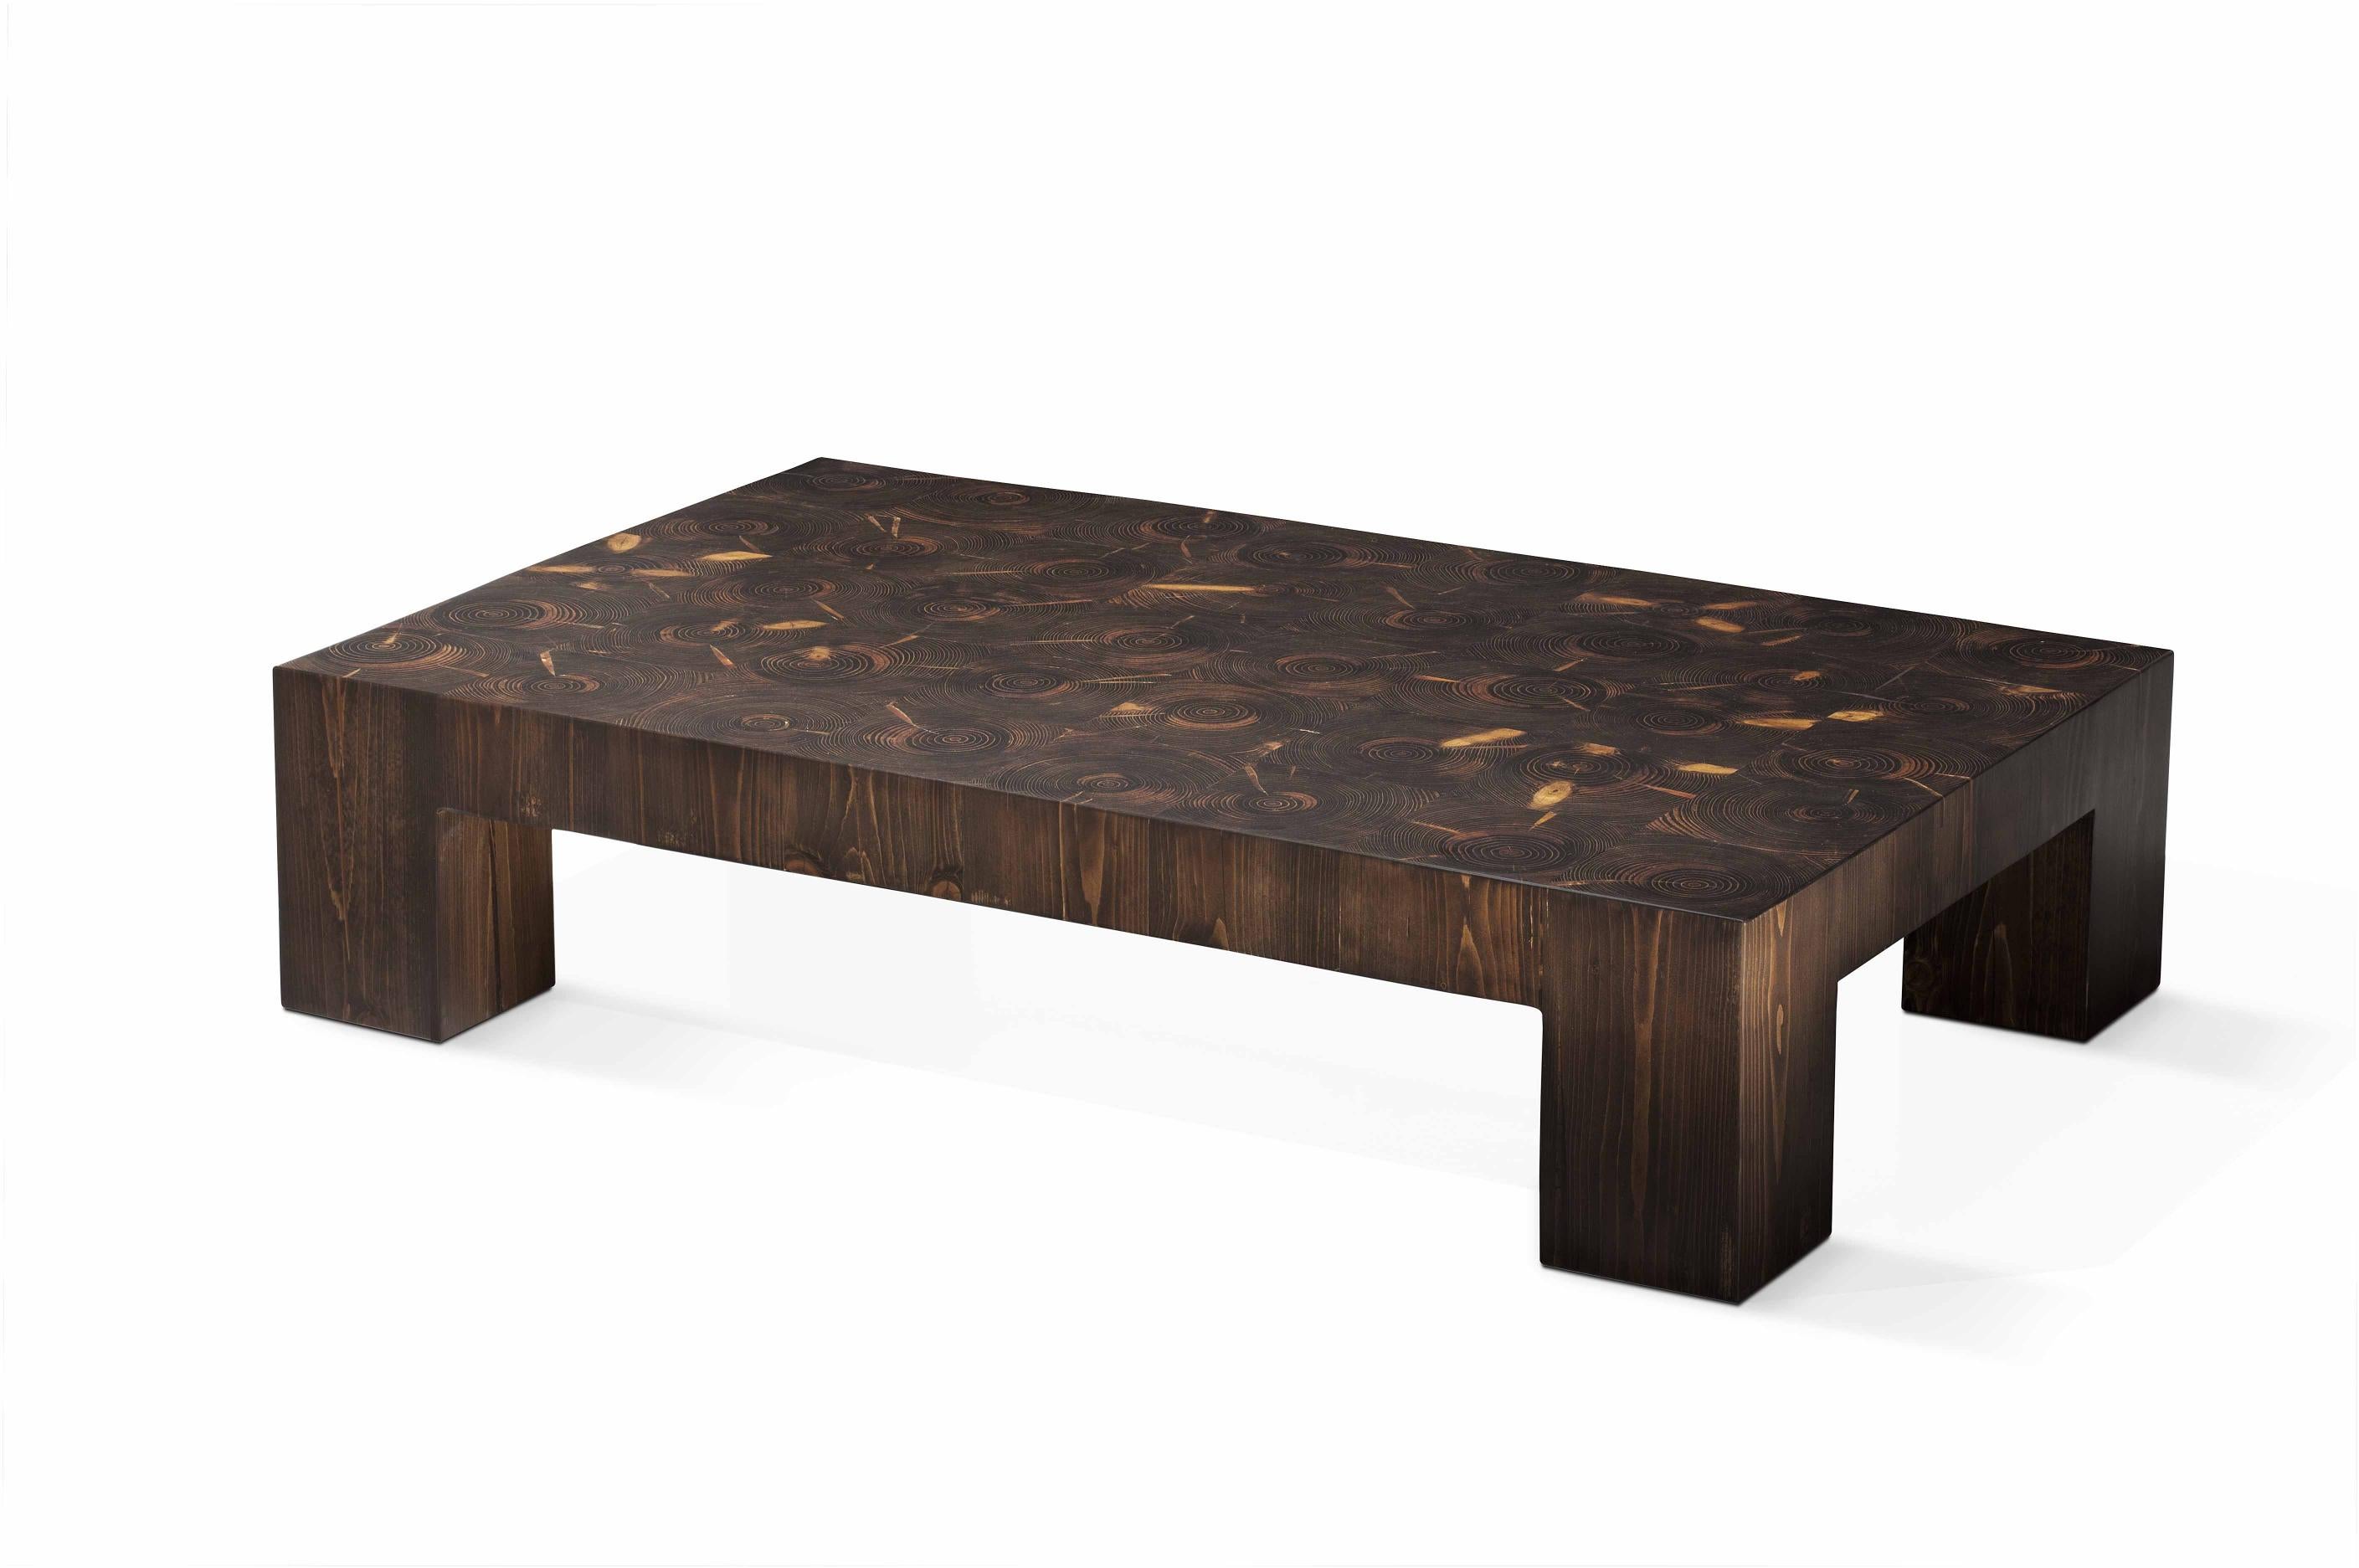 Table basse Across The Universe de Francesco Profili
Dimensions : L 120 x D&H 75 x H 27 cm 
MATERIAL : Bois massif, résine.

L'élégance d'une forme simple, la richesse naturelle du bois, la magie de la lumière.
La table transmet une atmosphère